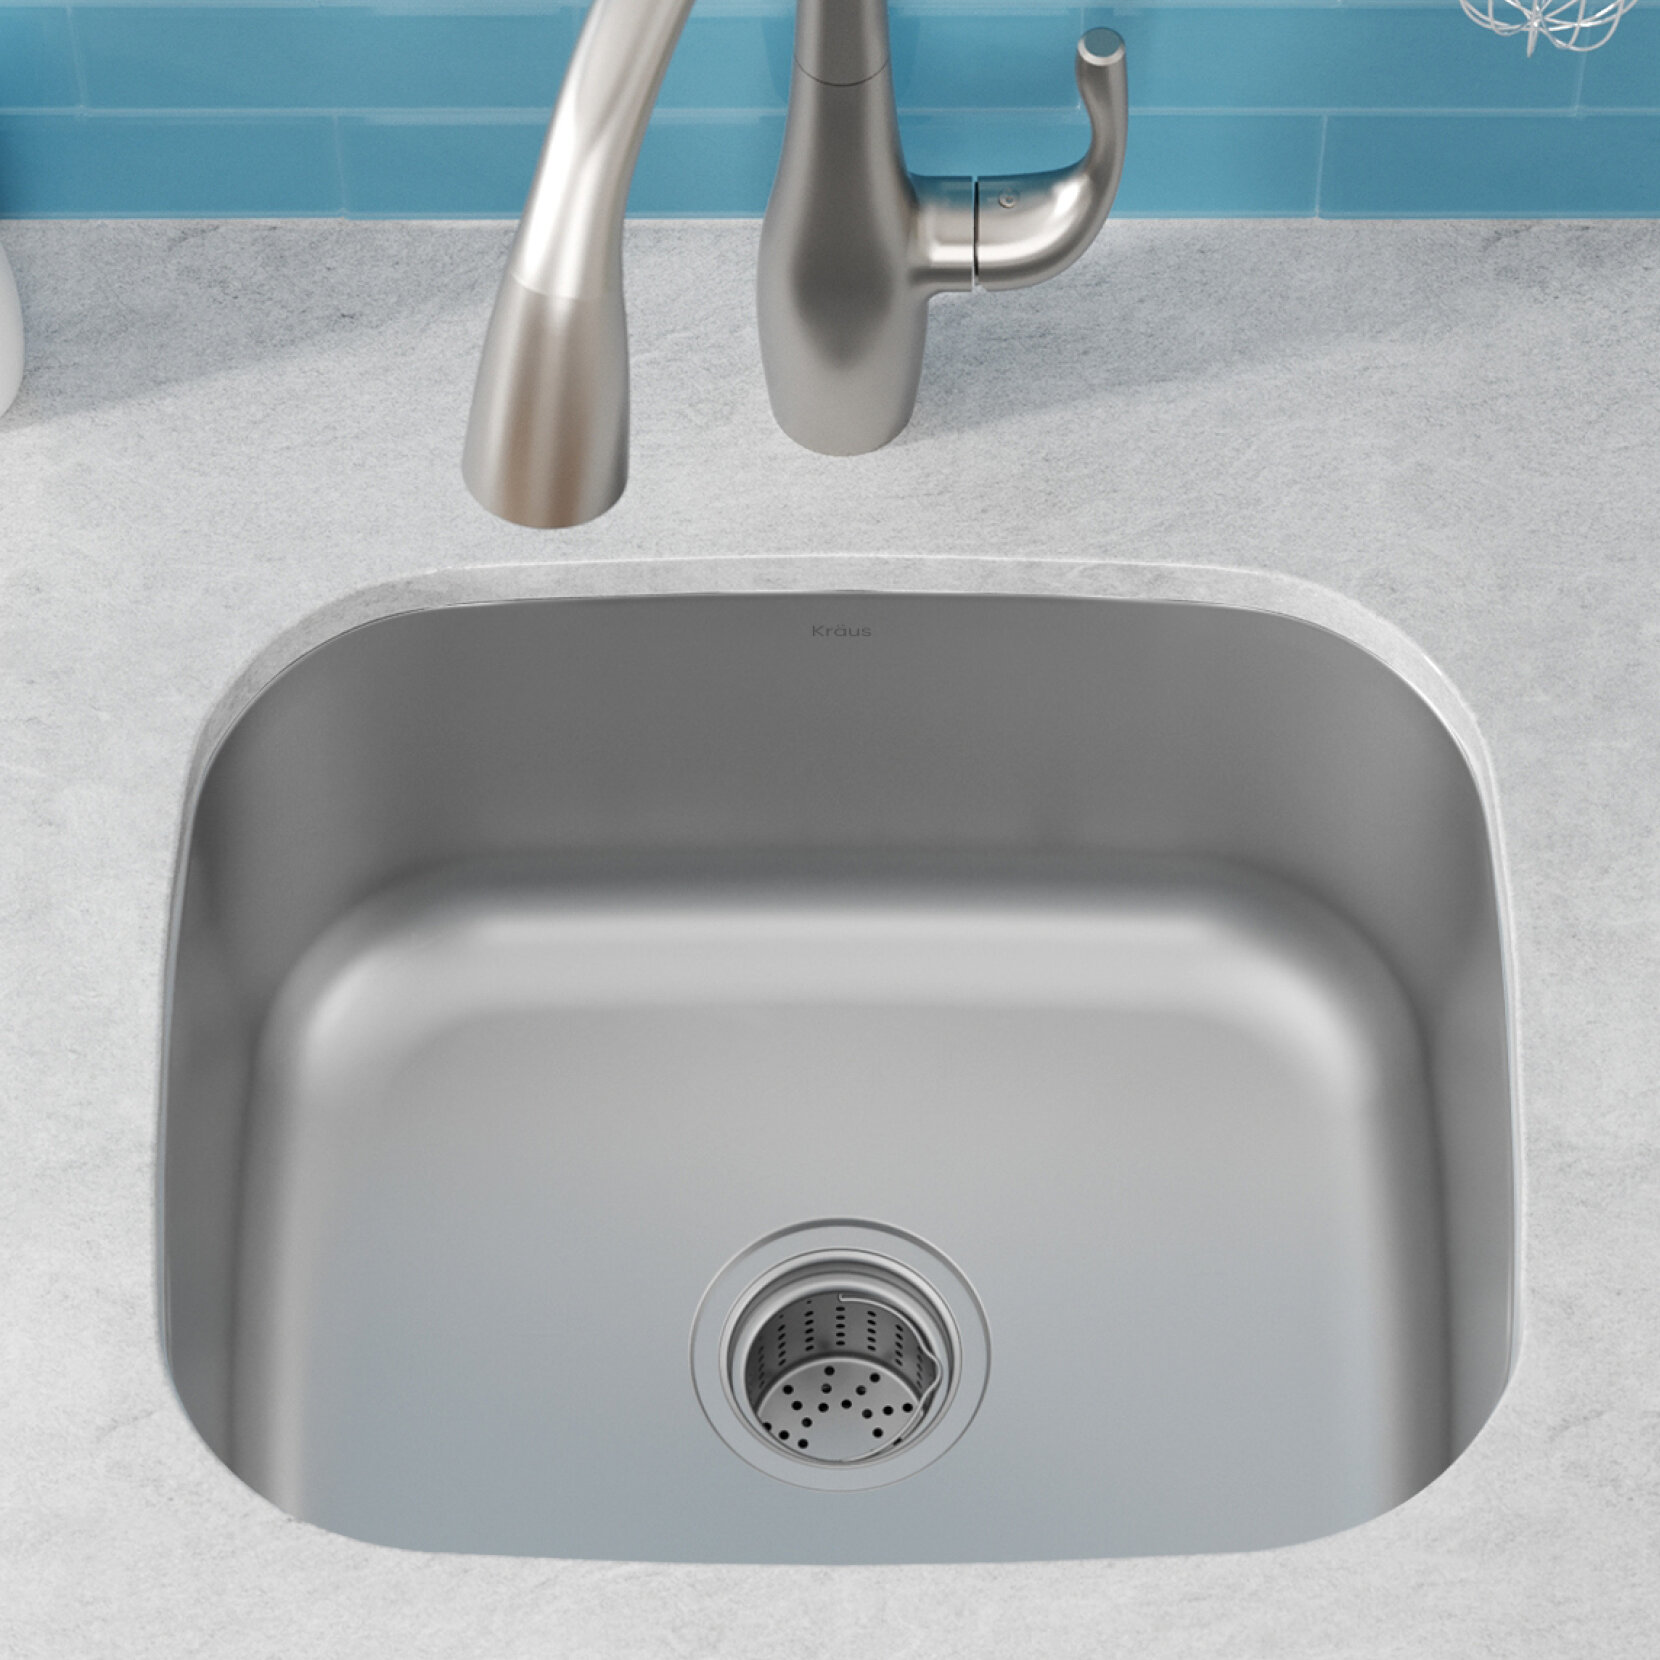 https://assets.wfcdn.com/im/53382107/compr-r85/5881/58811176/kraus-premier-20-inch-l-16-gauge-undermount-single-bowl-stainless-steel-kitchen-sink.jpg